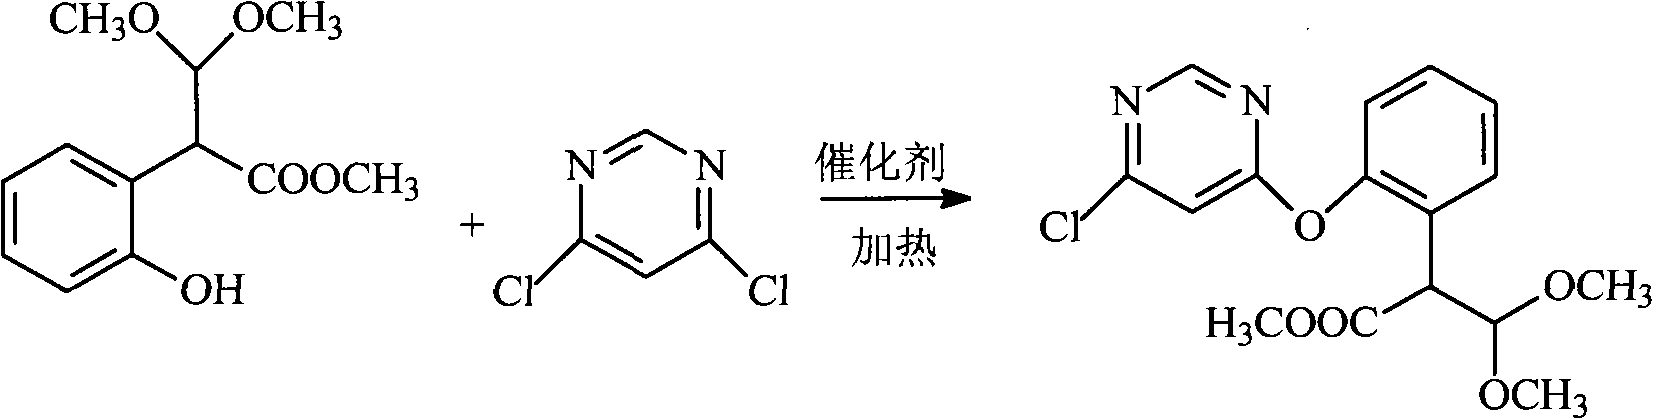 Preparation method of (E)-2-[2-(6-pyrimidine-4-yloxy) phenyl]-3-methoxyacrylate